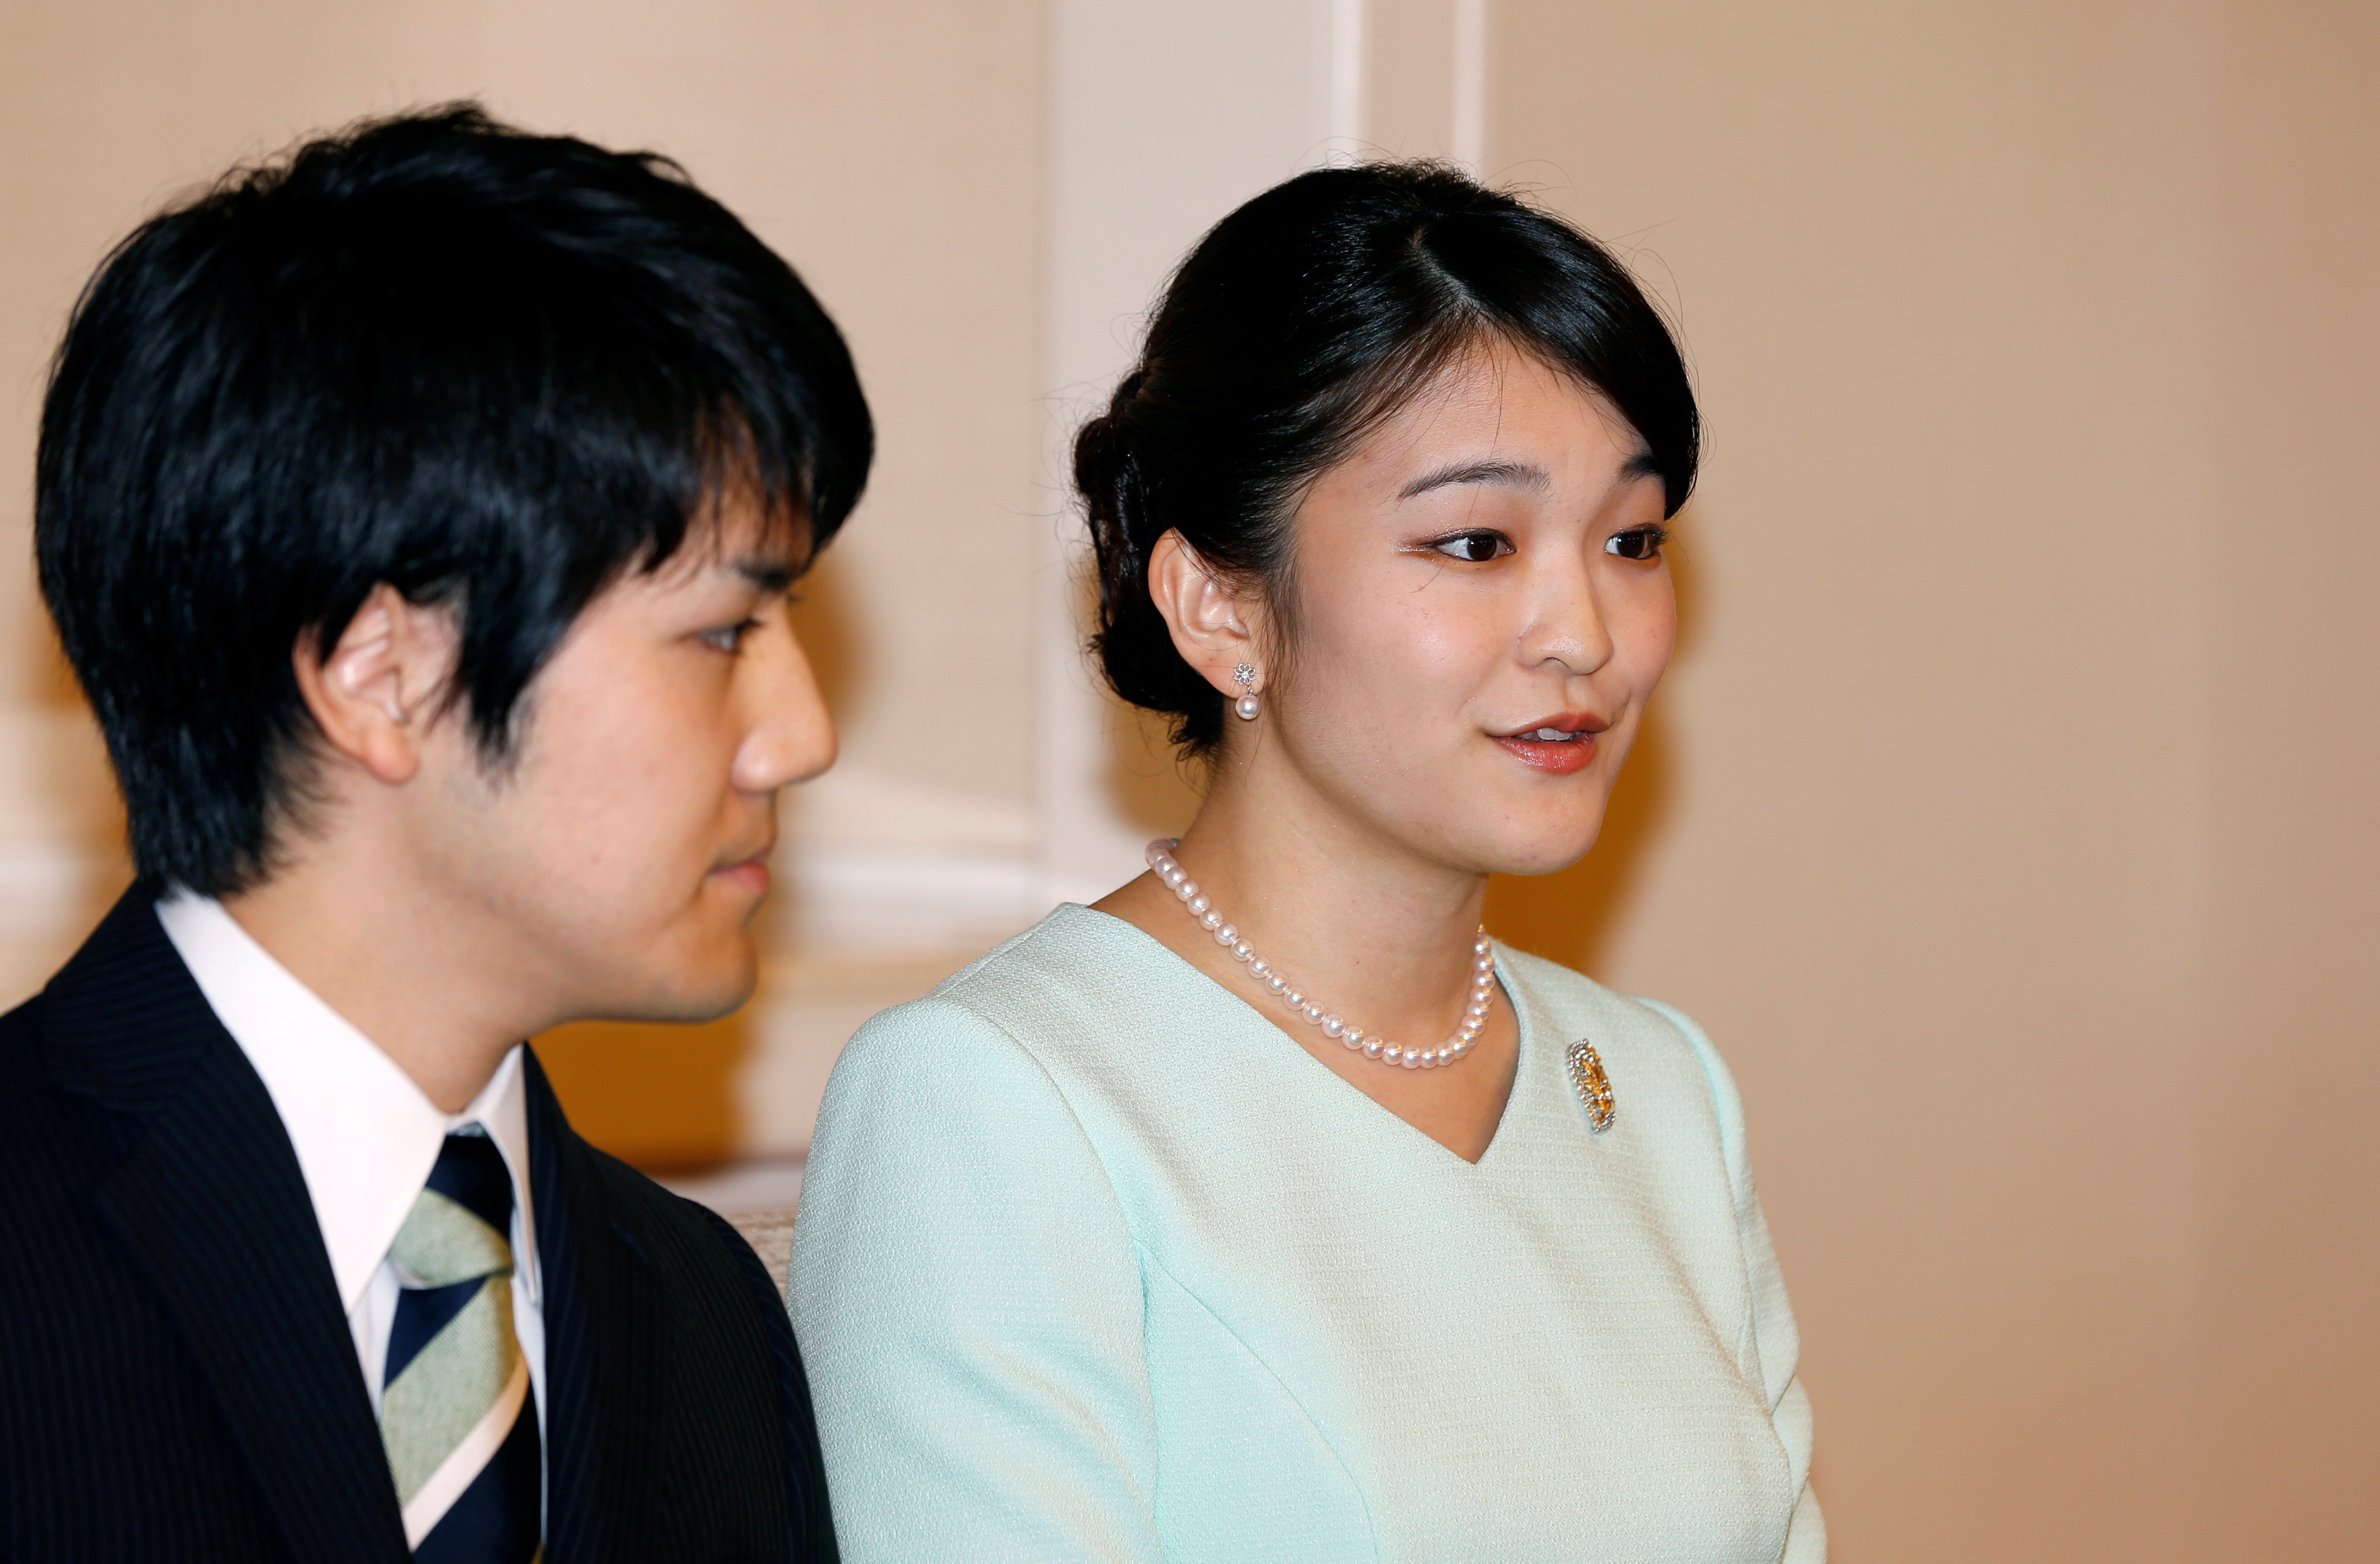 حفل زفاف الأميرة ماكو والأمير   كيه كومورو